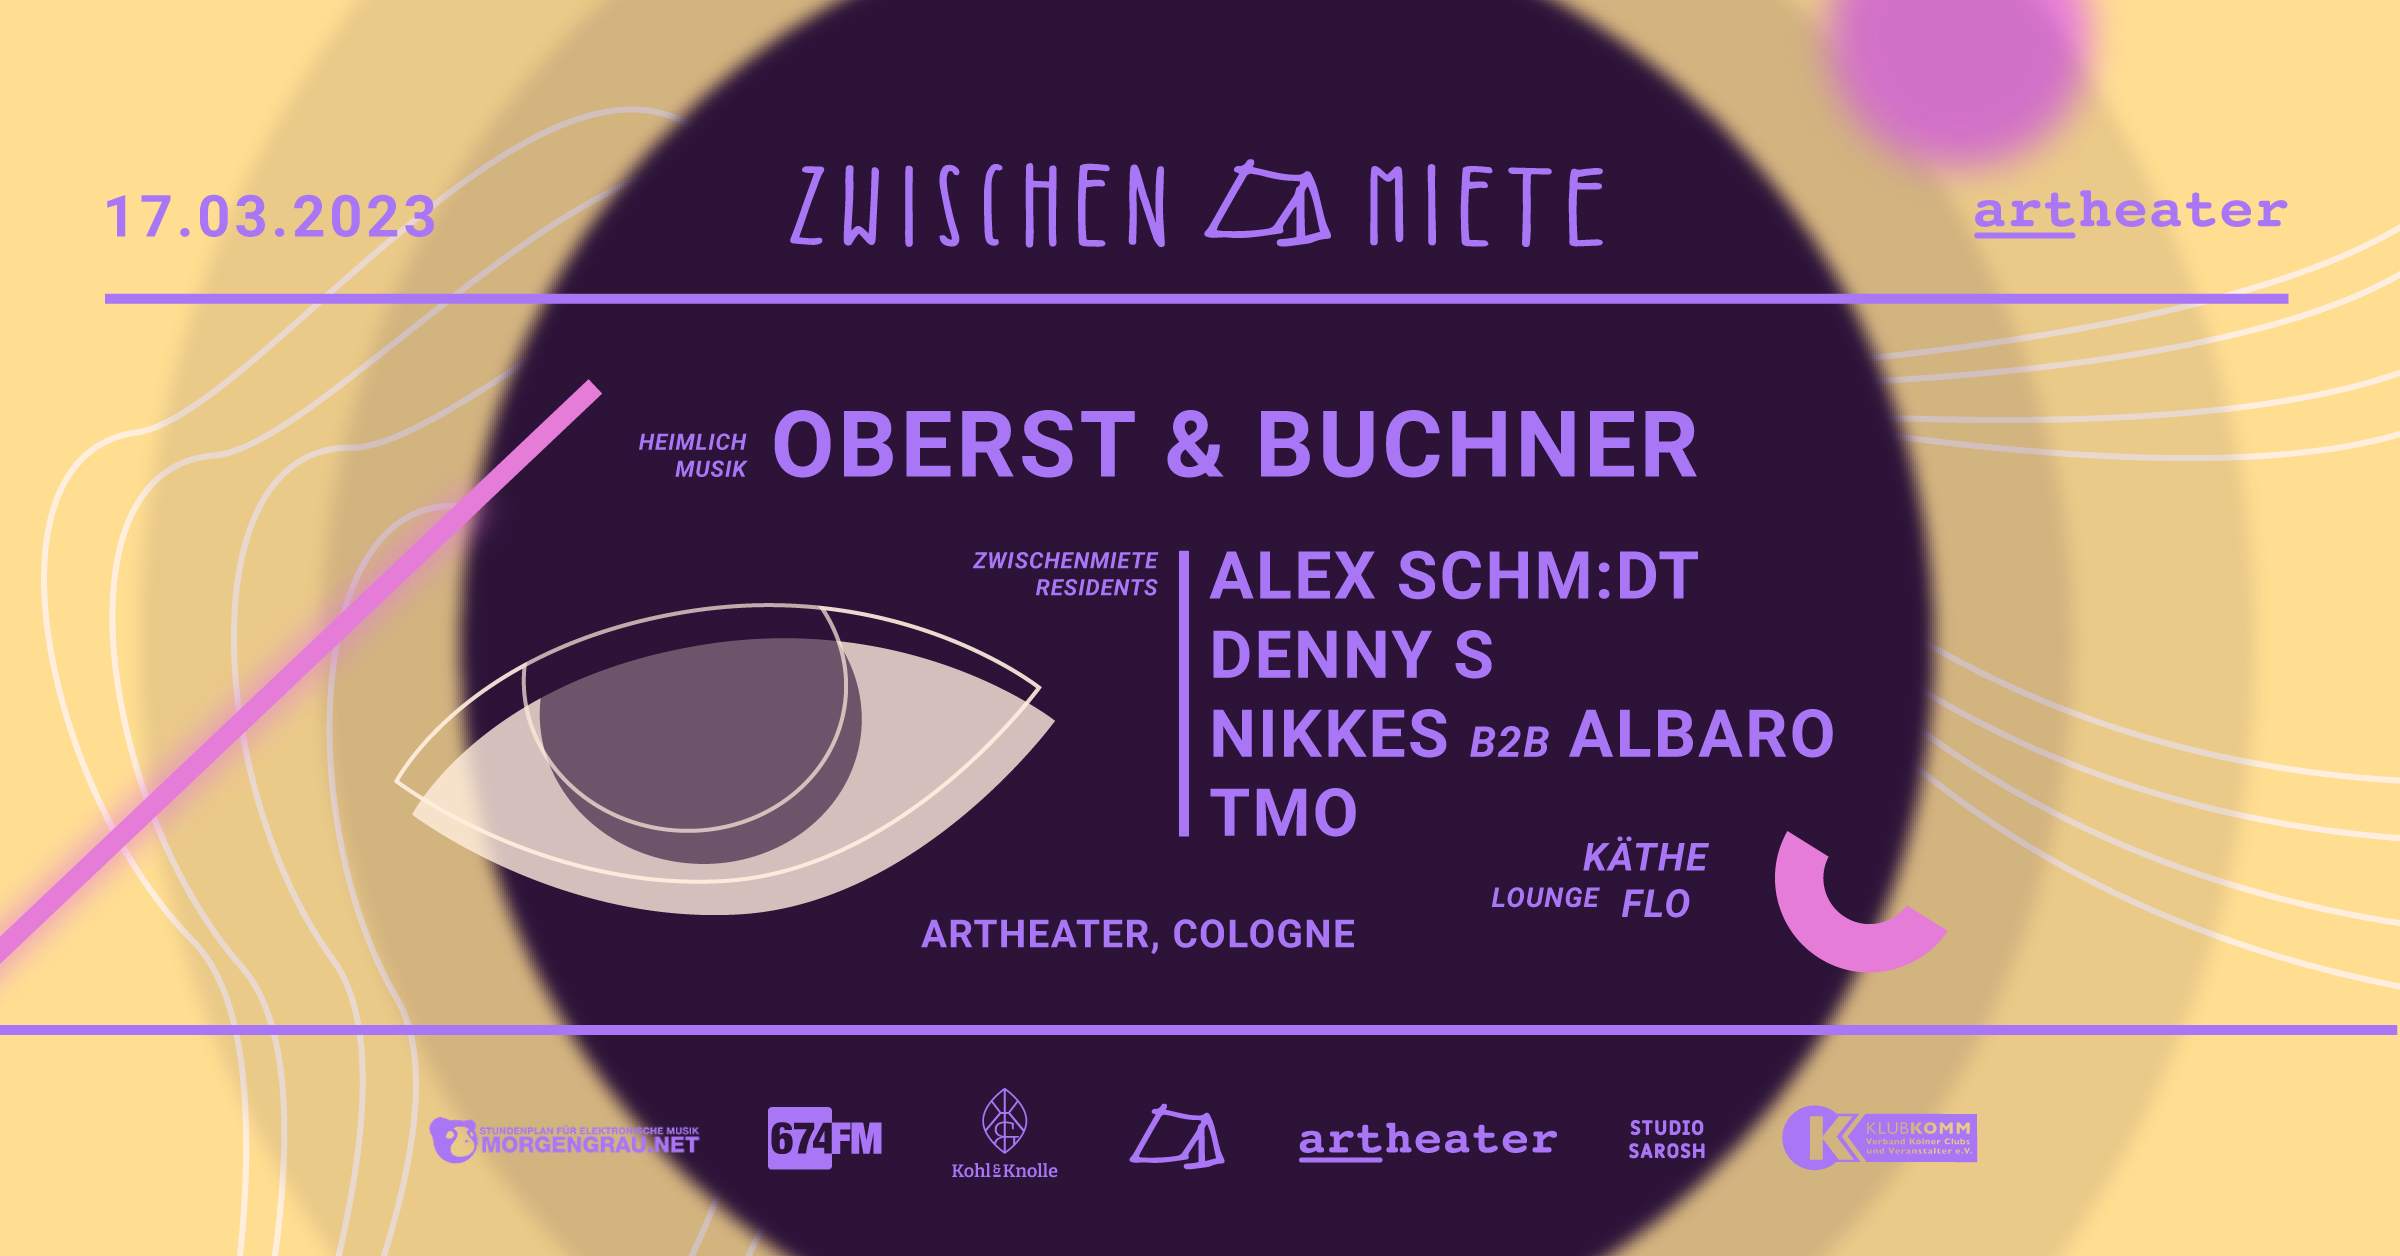 Zwischenmiete Club Edition with Oberst & Buchner - フライヤー表